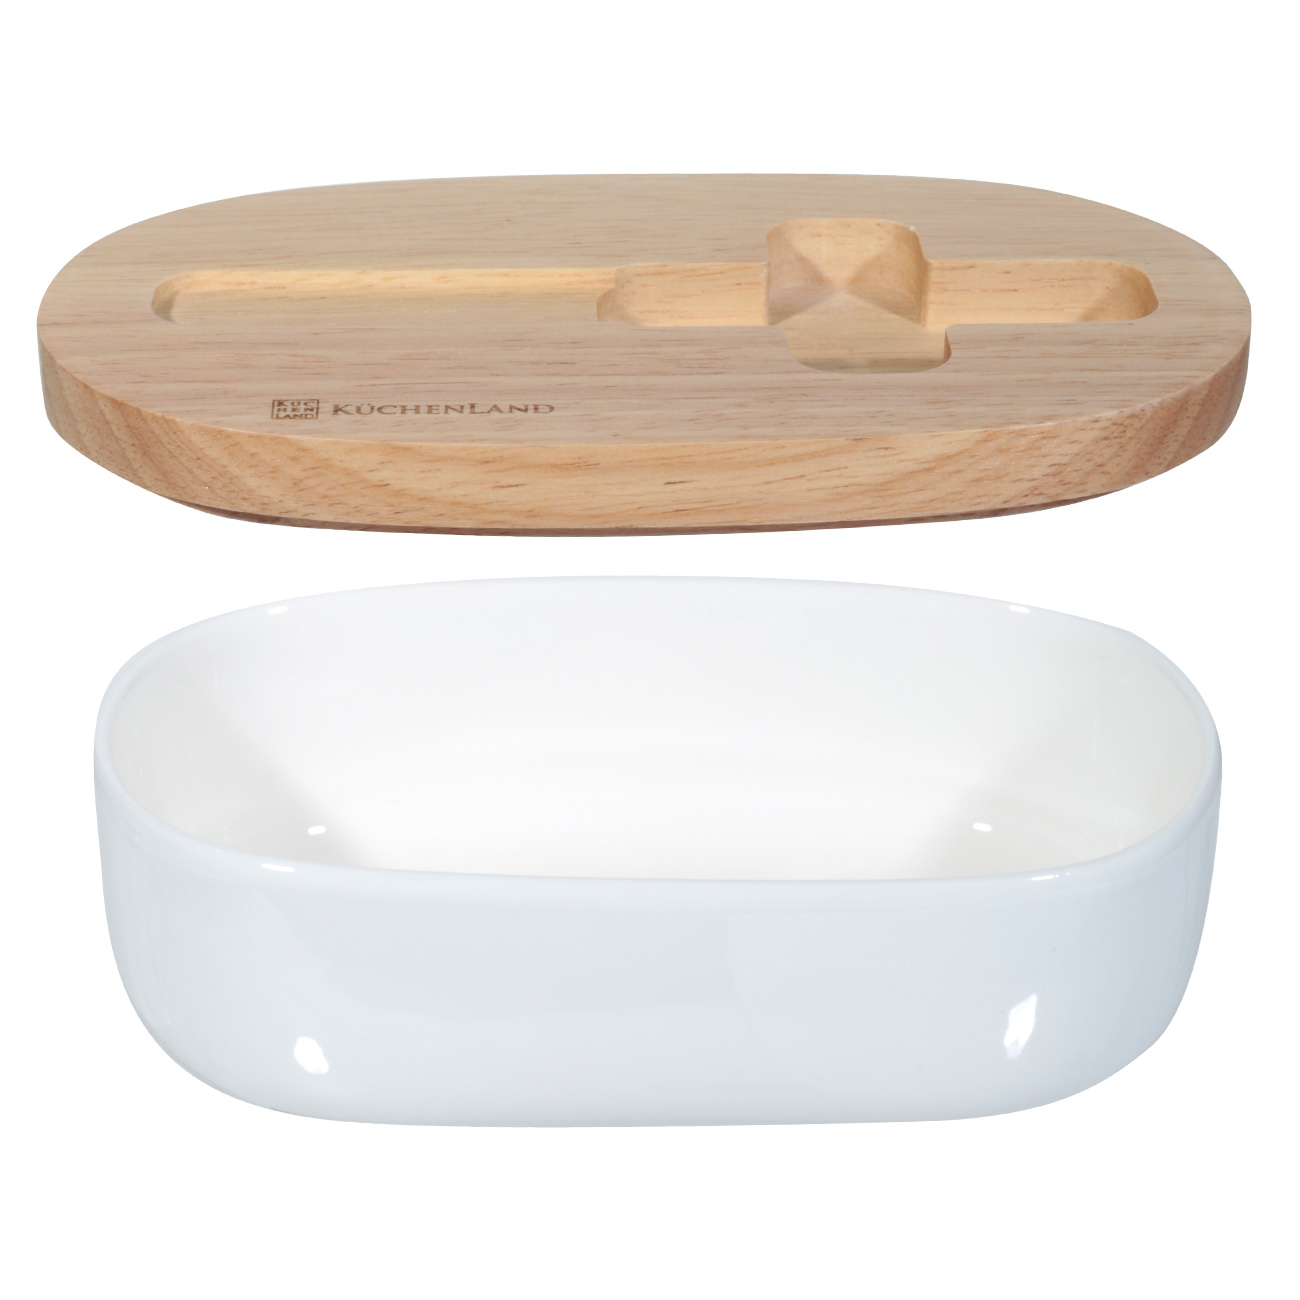 Butter dish, 15 cm, with knife, porcelain N / wood, oval, Light kitchen изображение № 2